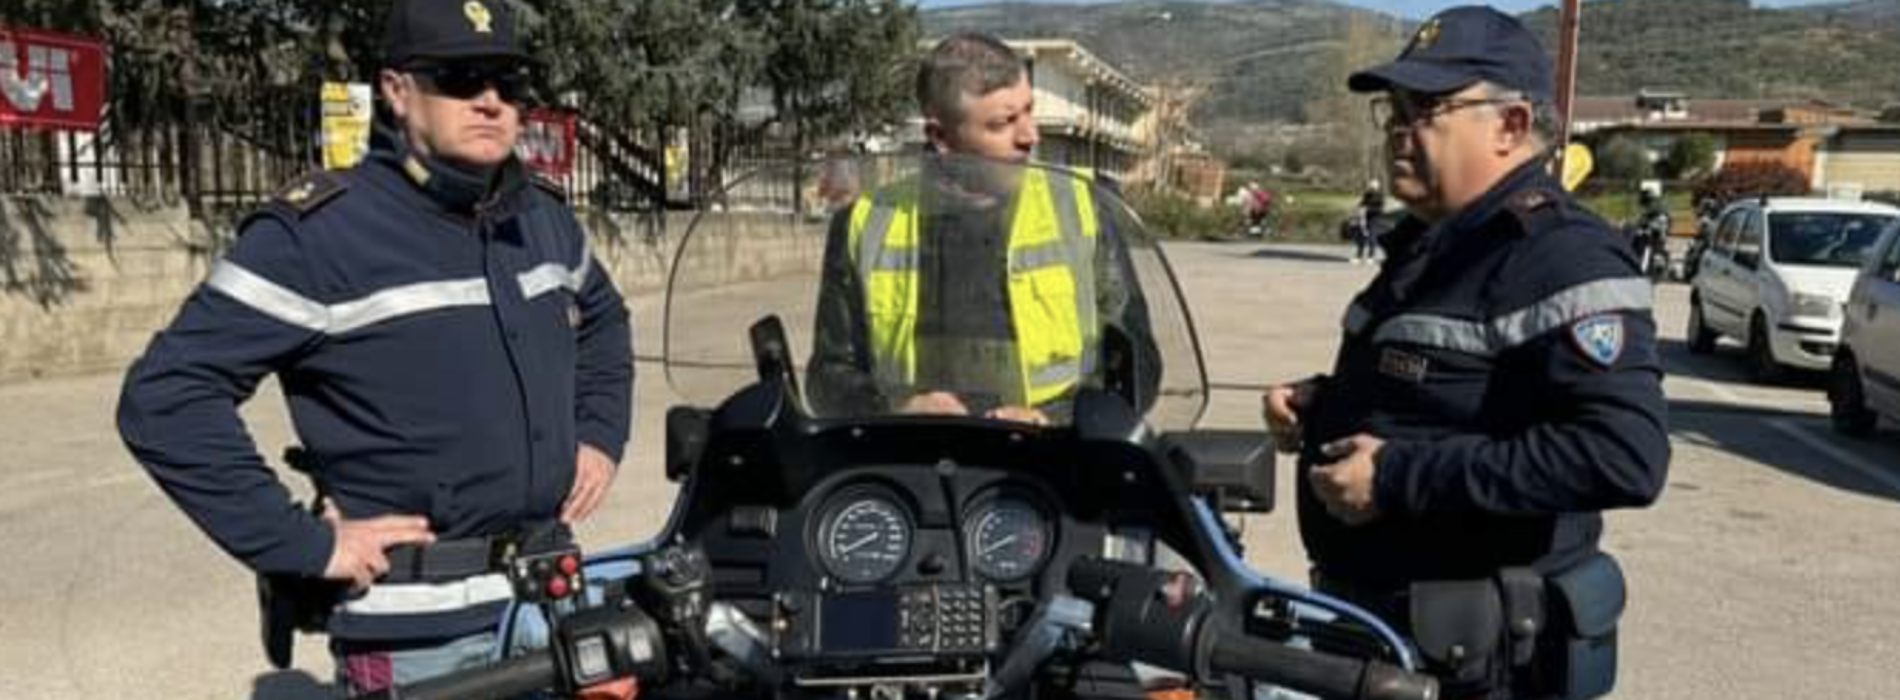 Autismo, 200 moto da tutta Italia per l’evento Mototerapia